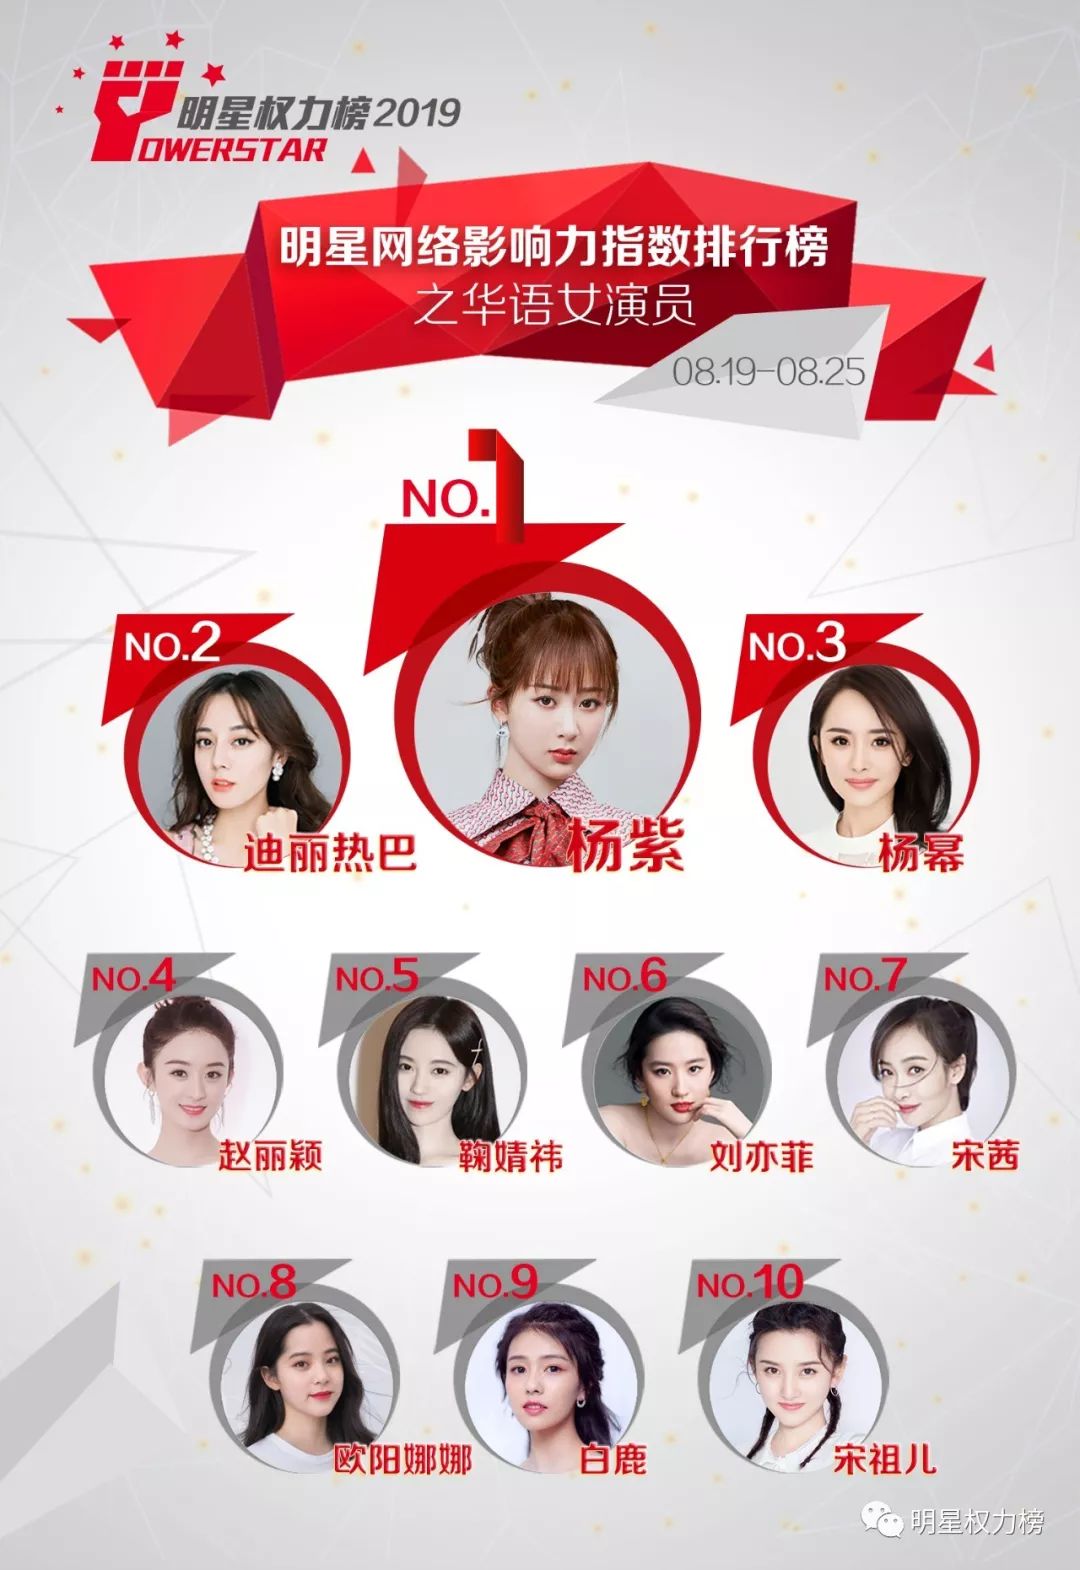 明星网络影响力指数排行榜第214期榜单之华语女演员Top10